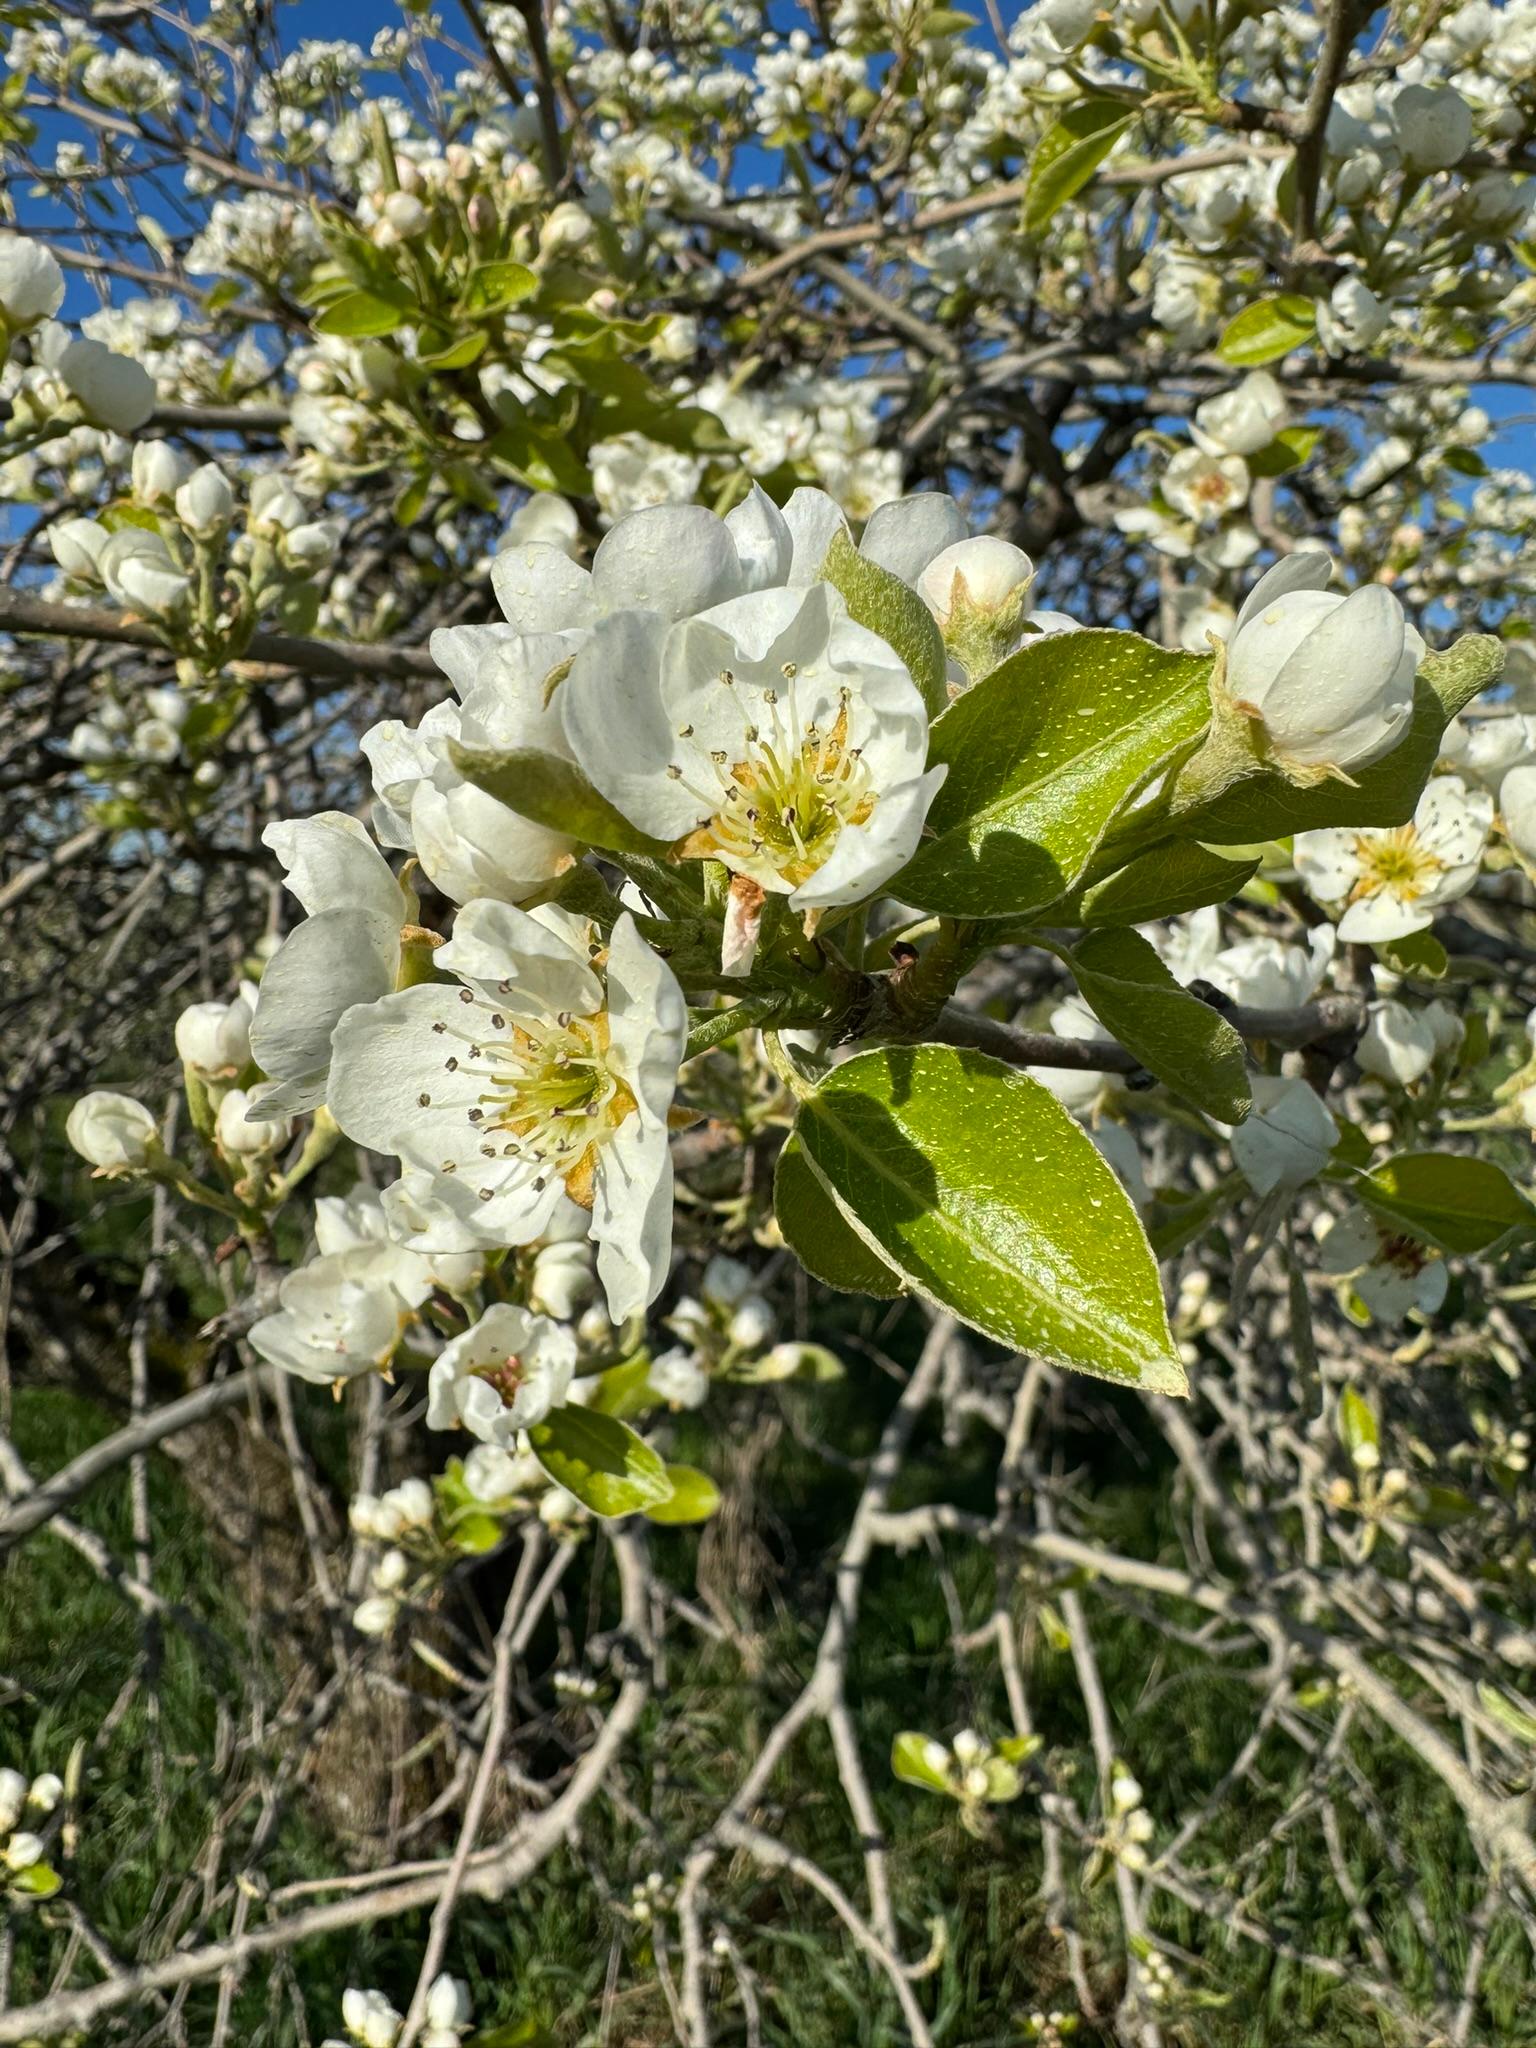 Pears blooming.